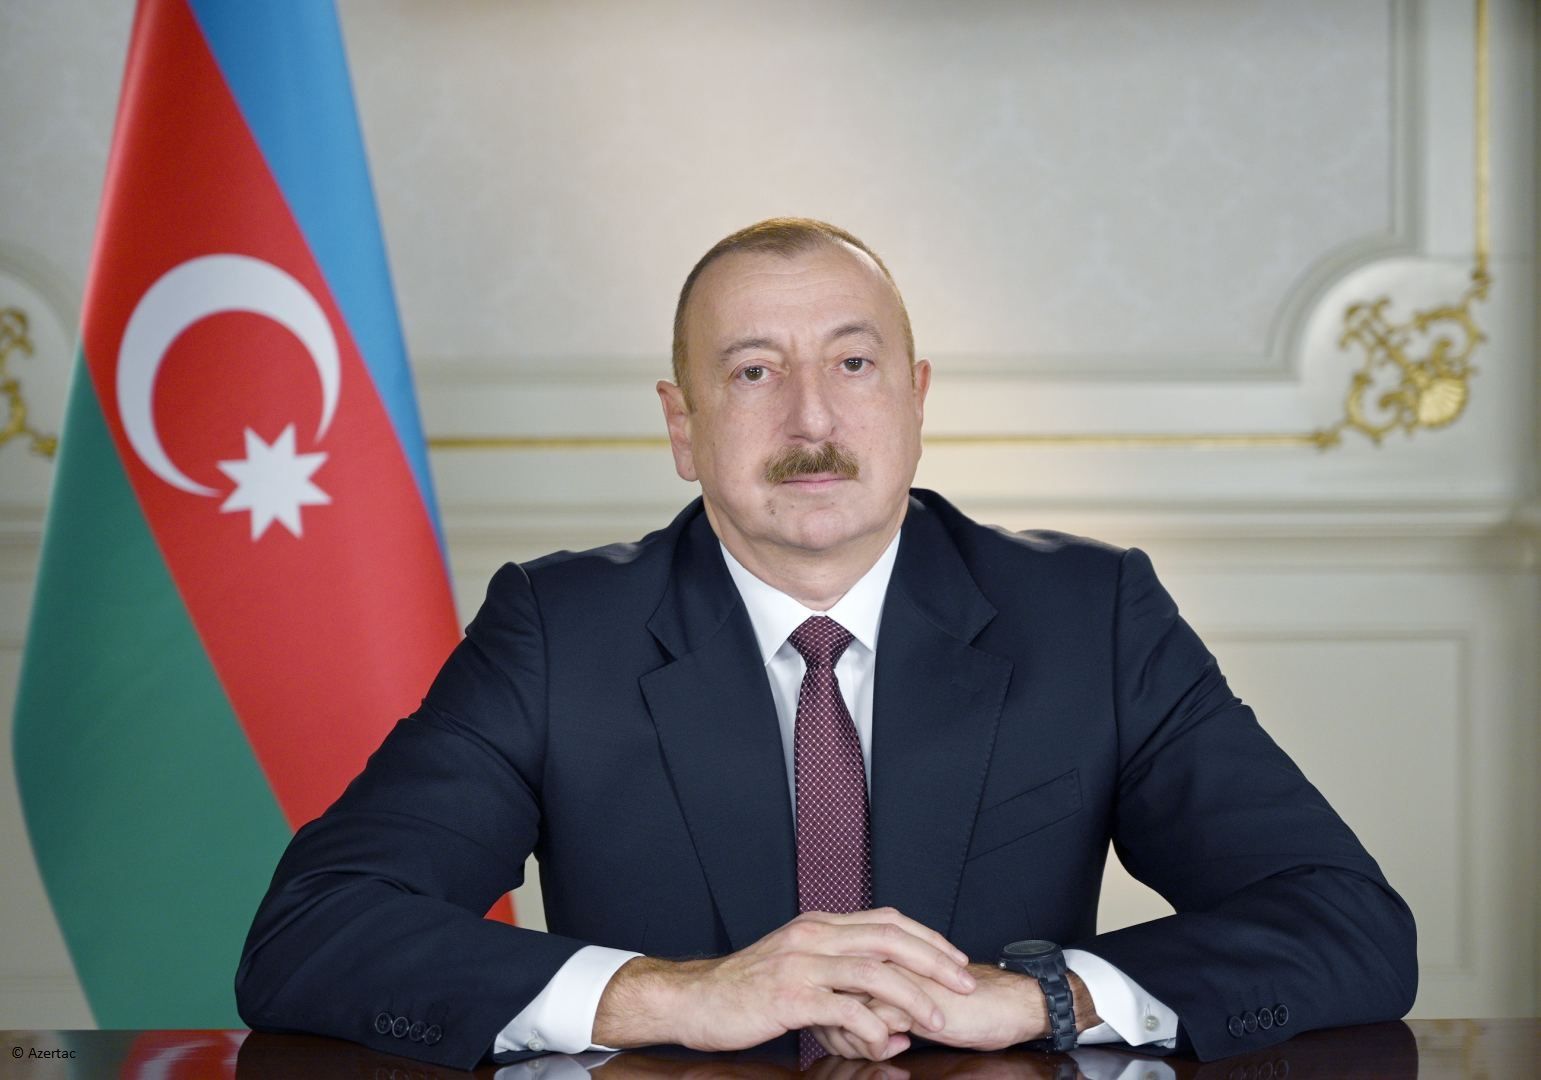 Le président azerbaïdjanais félicite la présidente du Népal pour la fête nationale de son pays